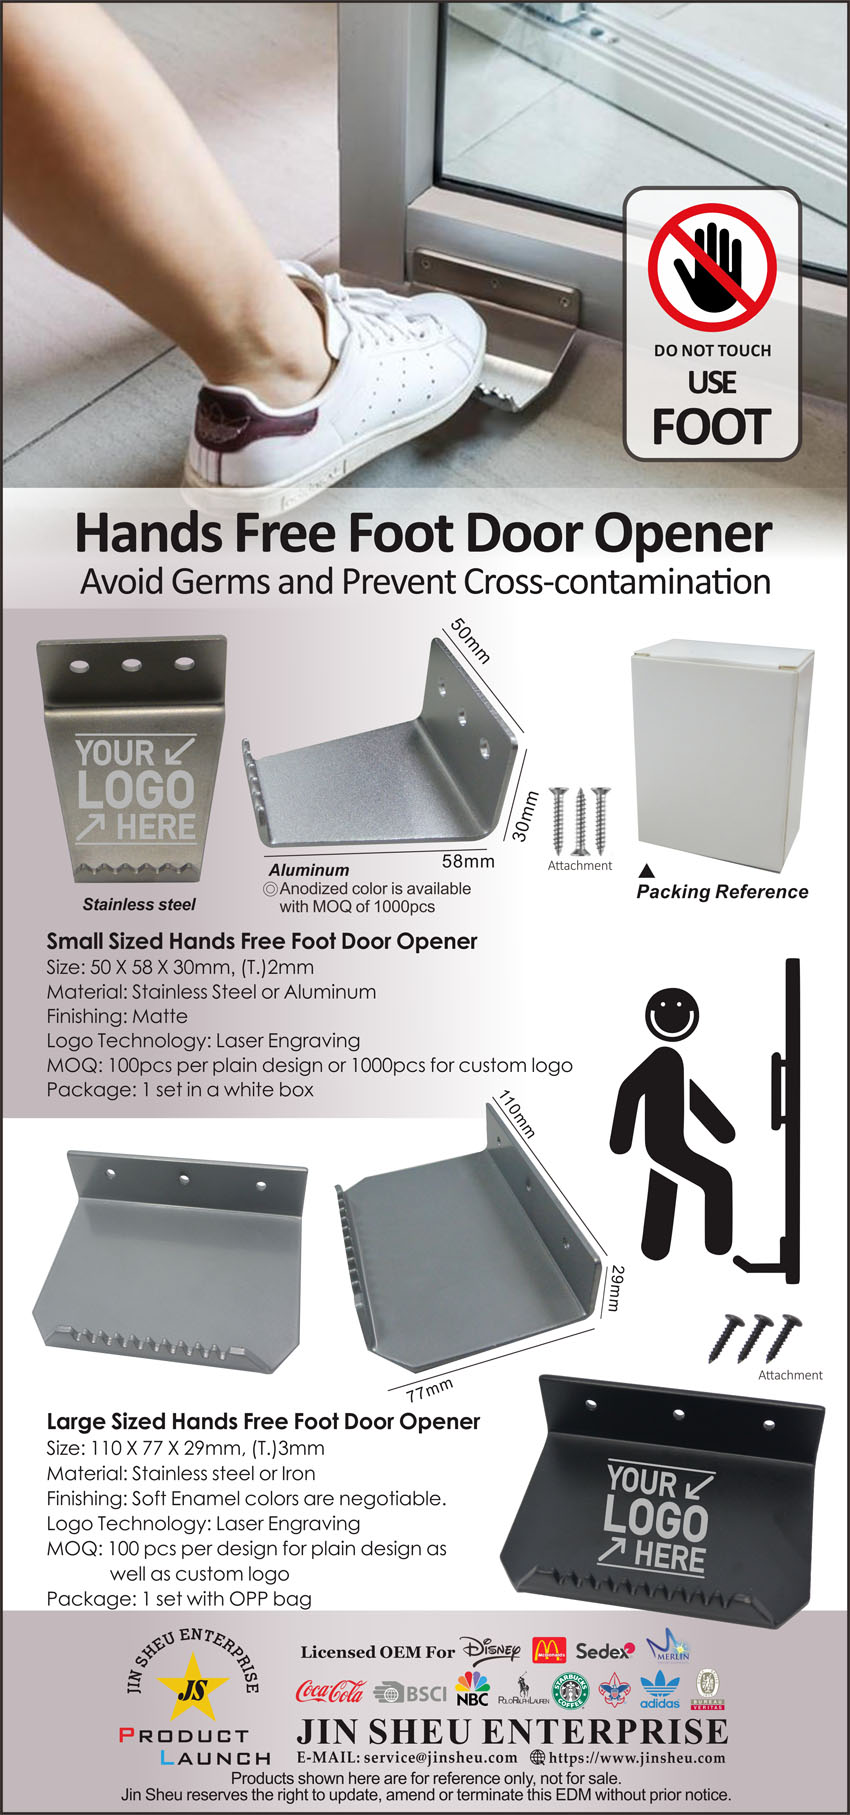 hands free foot door openers